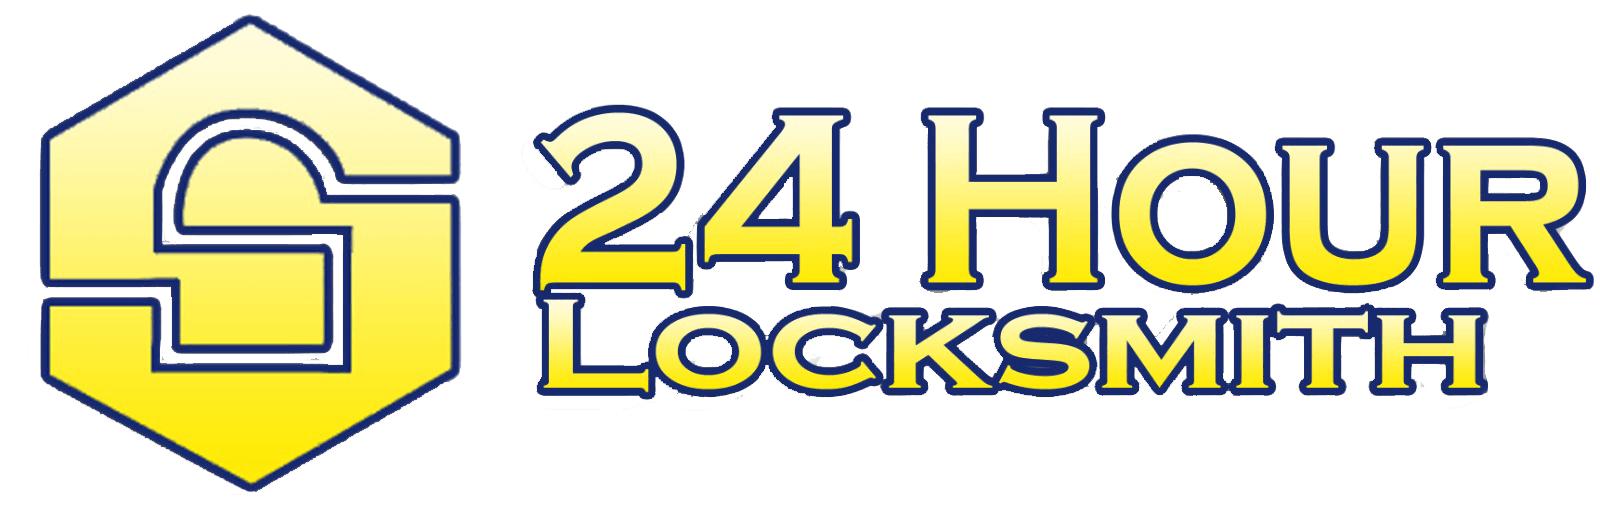 24 Hour Locksmith in Durham, NC